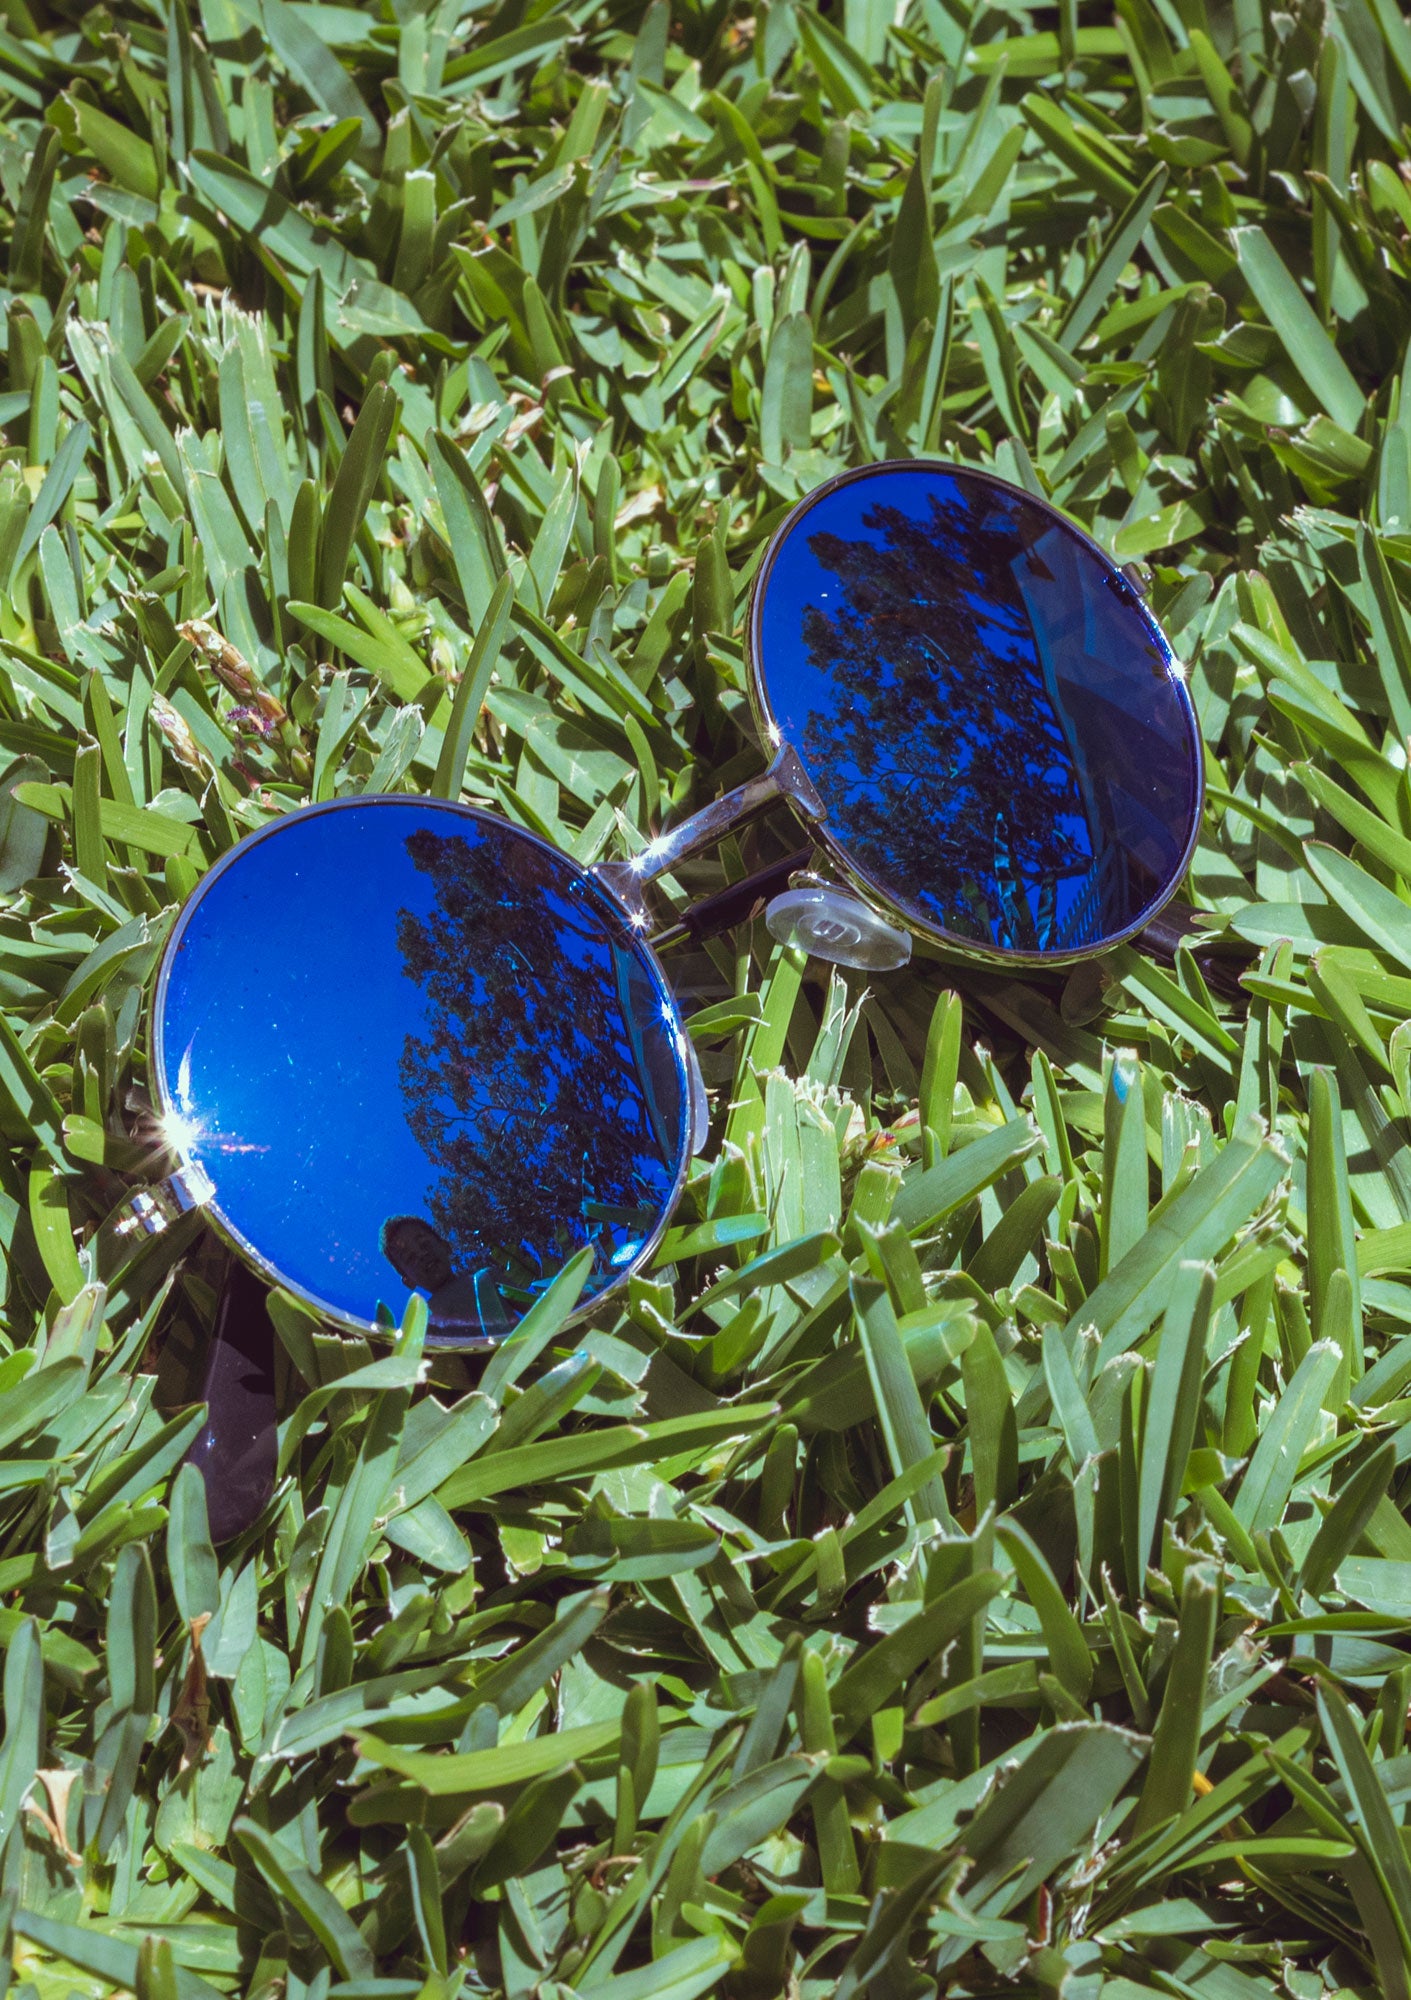 Round Blue Mirrored Sunglasses